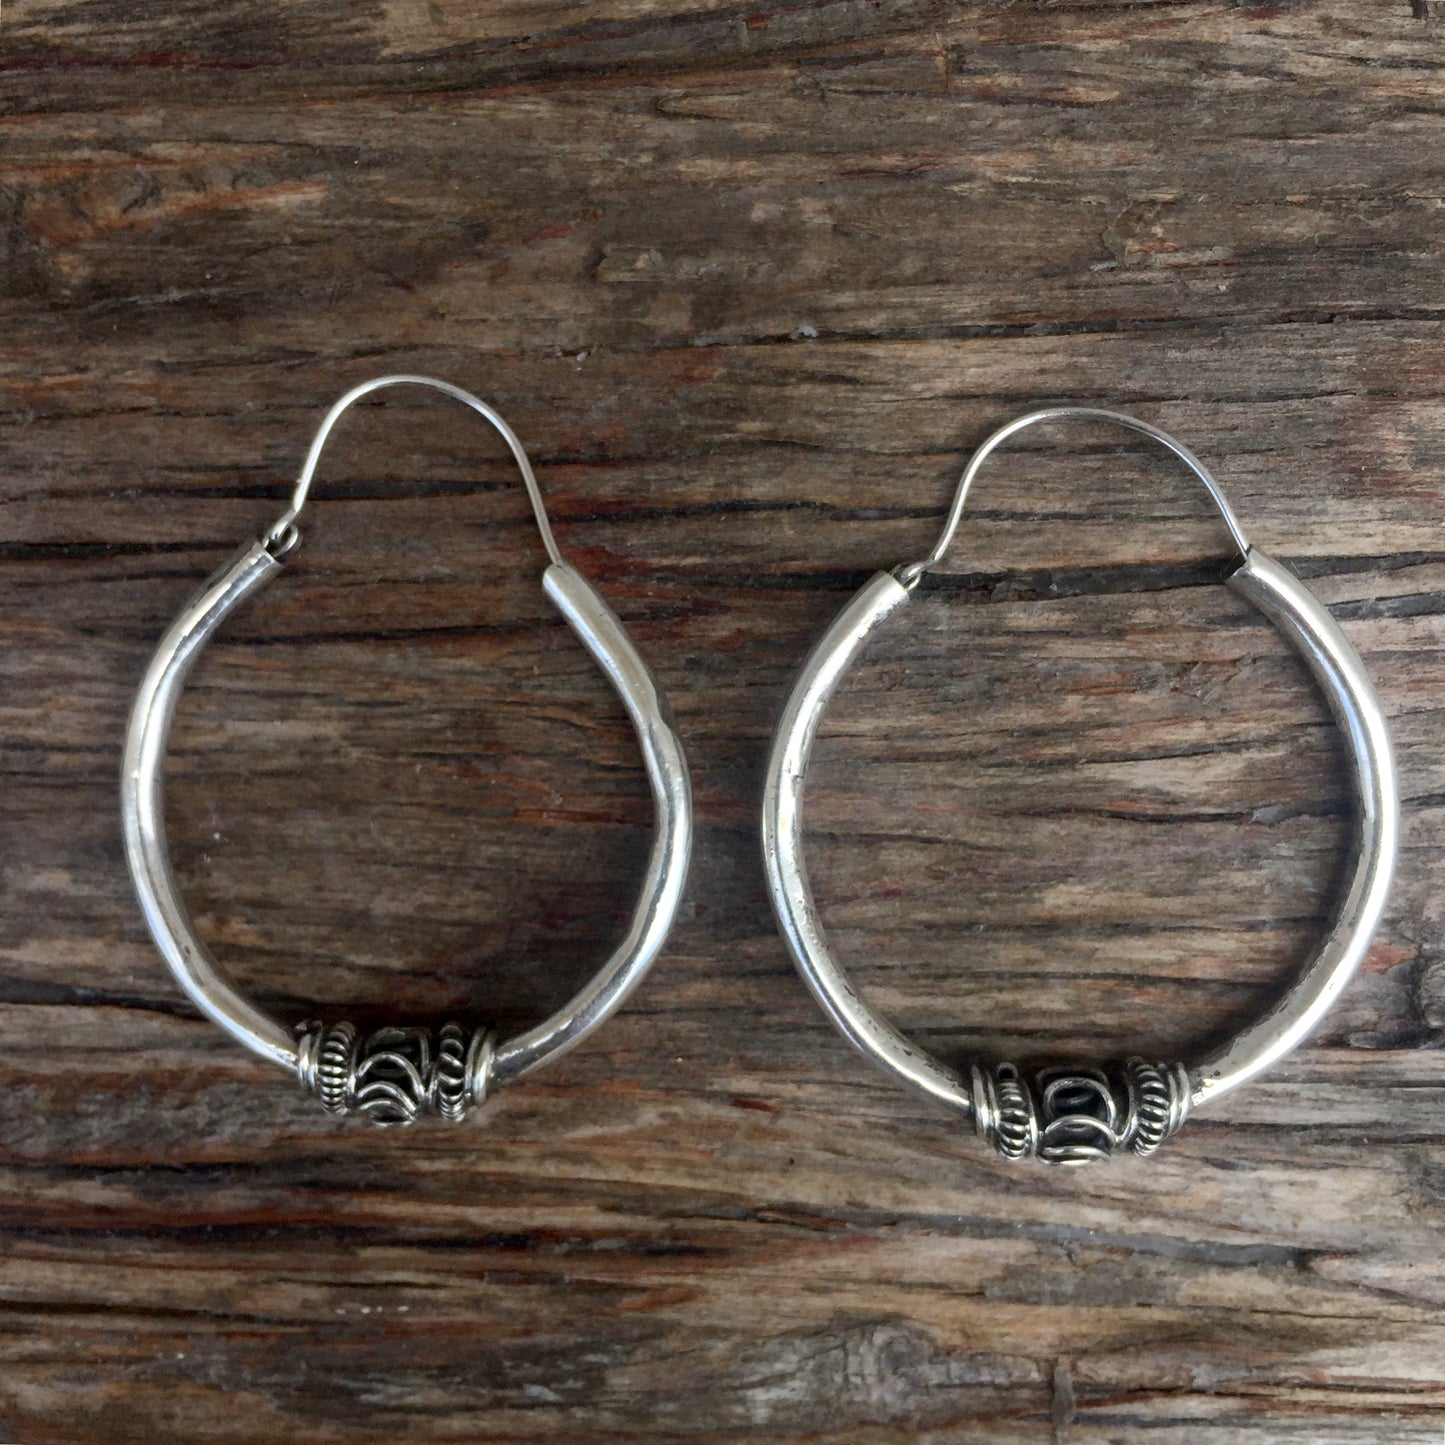 Silver Hoop Earrings